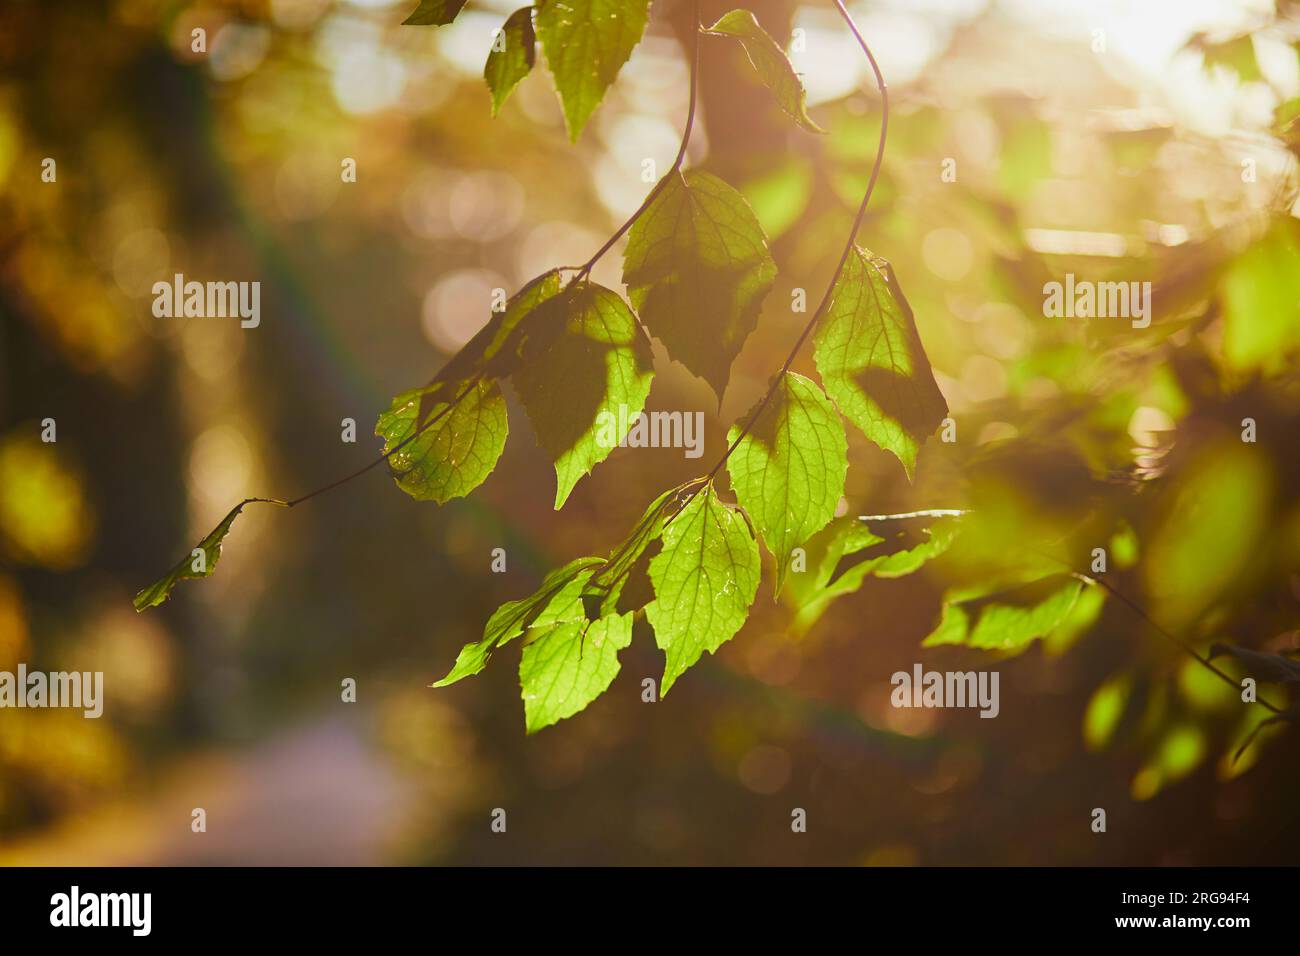 Foglie verdi e giallastro sul ramo degli alberi in una soleggiata giornata autunnale. Bellezza della natura autunnale Foto Stock